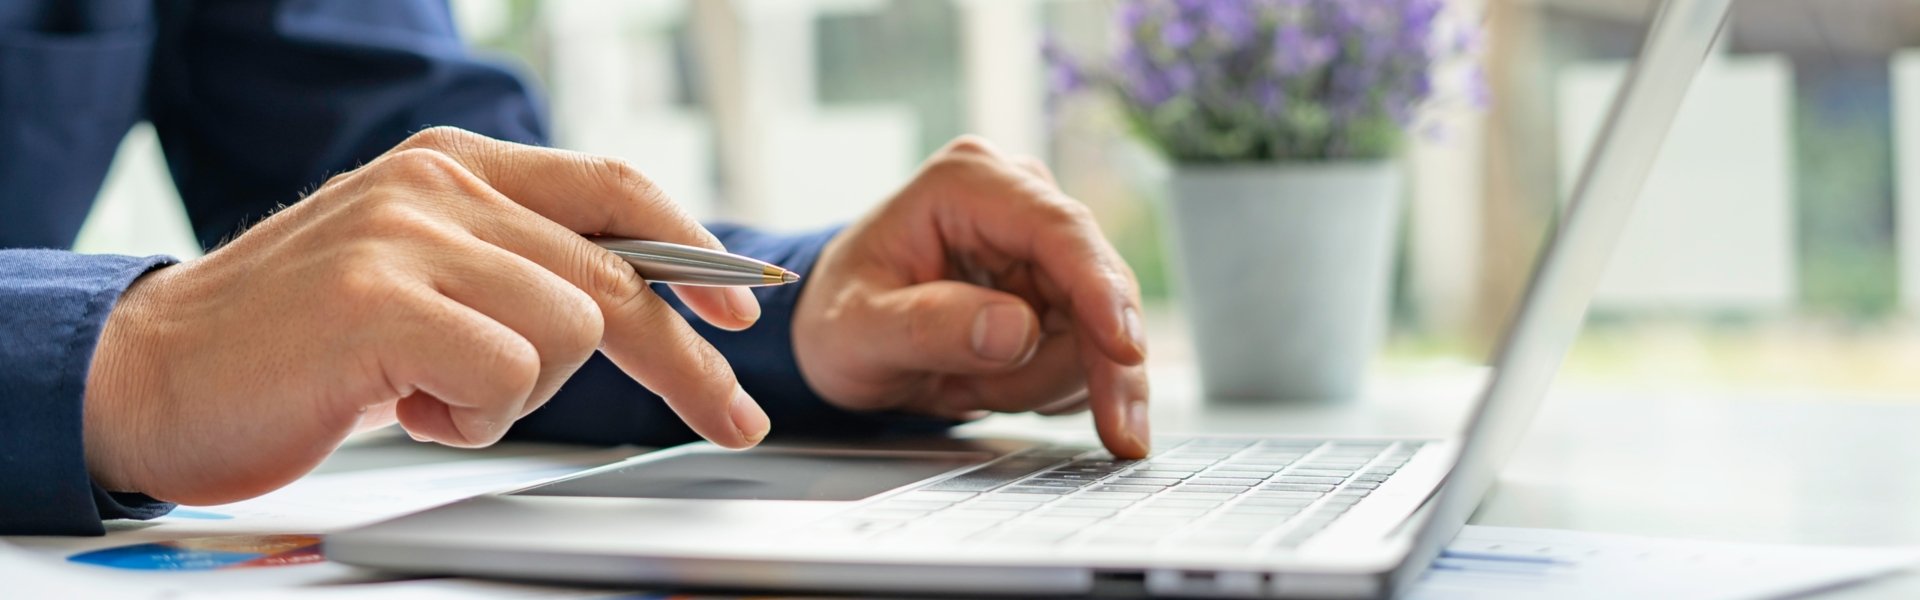 Mann sitzt vor einem Laptop mit einem Kugelschreiber in der Hand wie er eine Eingabe auf der Tastatur macht